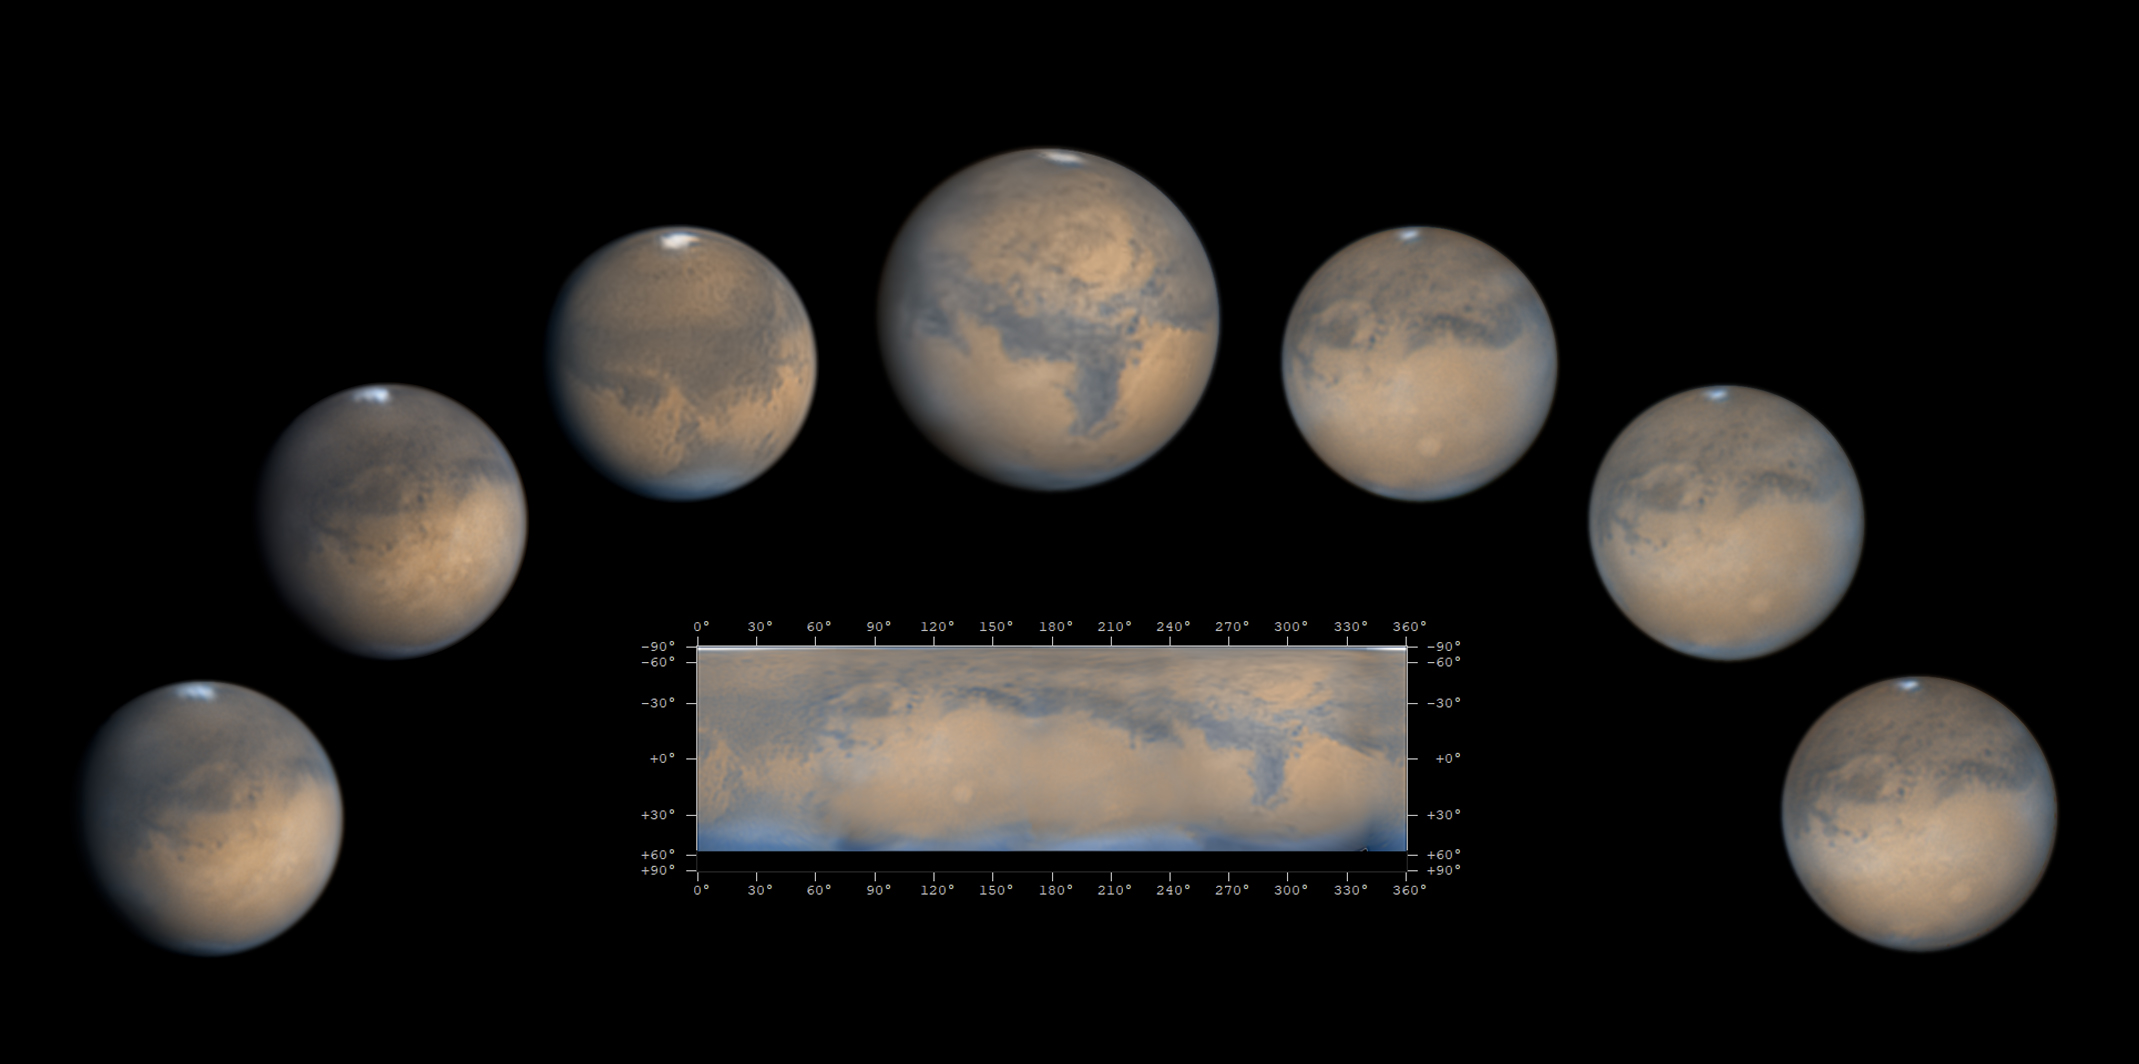 Miejsce 2 w kategorii "Obiekty Układu Słonecznego": Michael Barbieri (Włochy), zdjęcie “Mars Opposition”